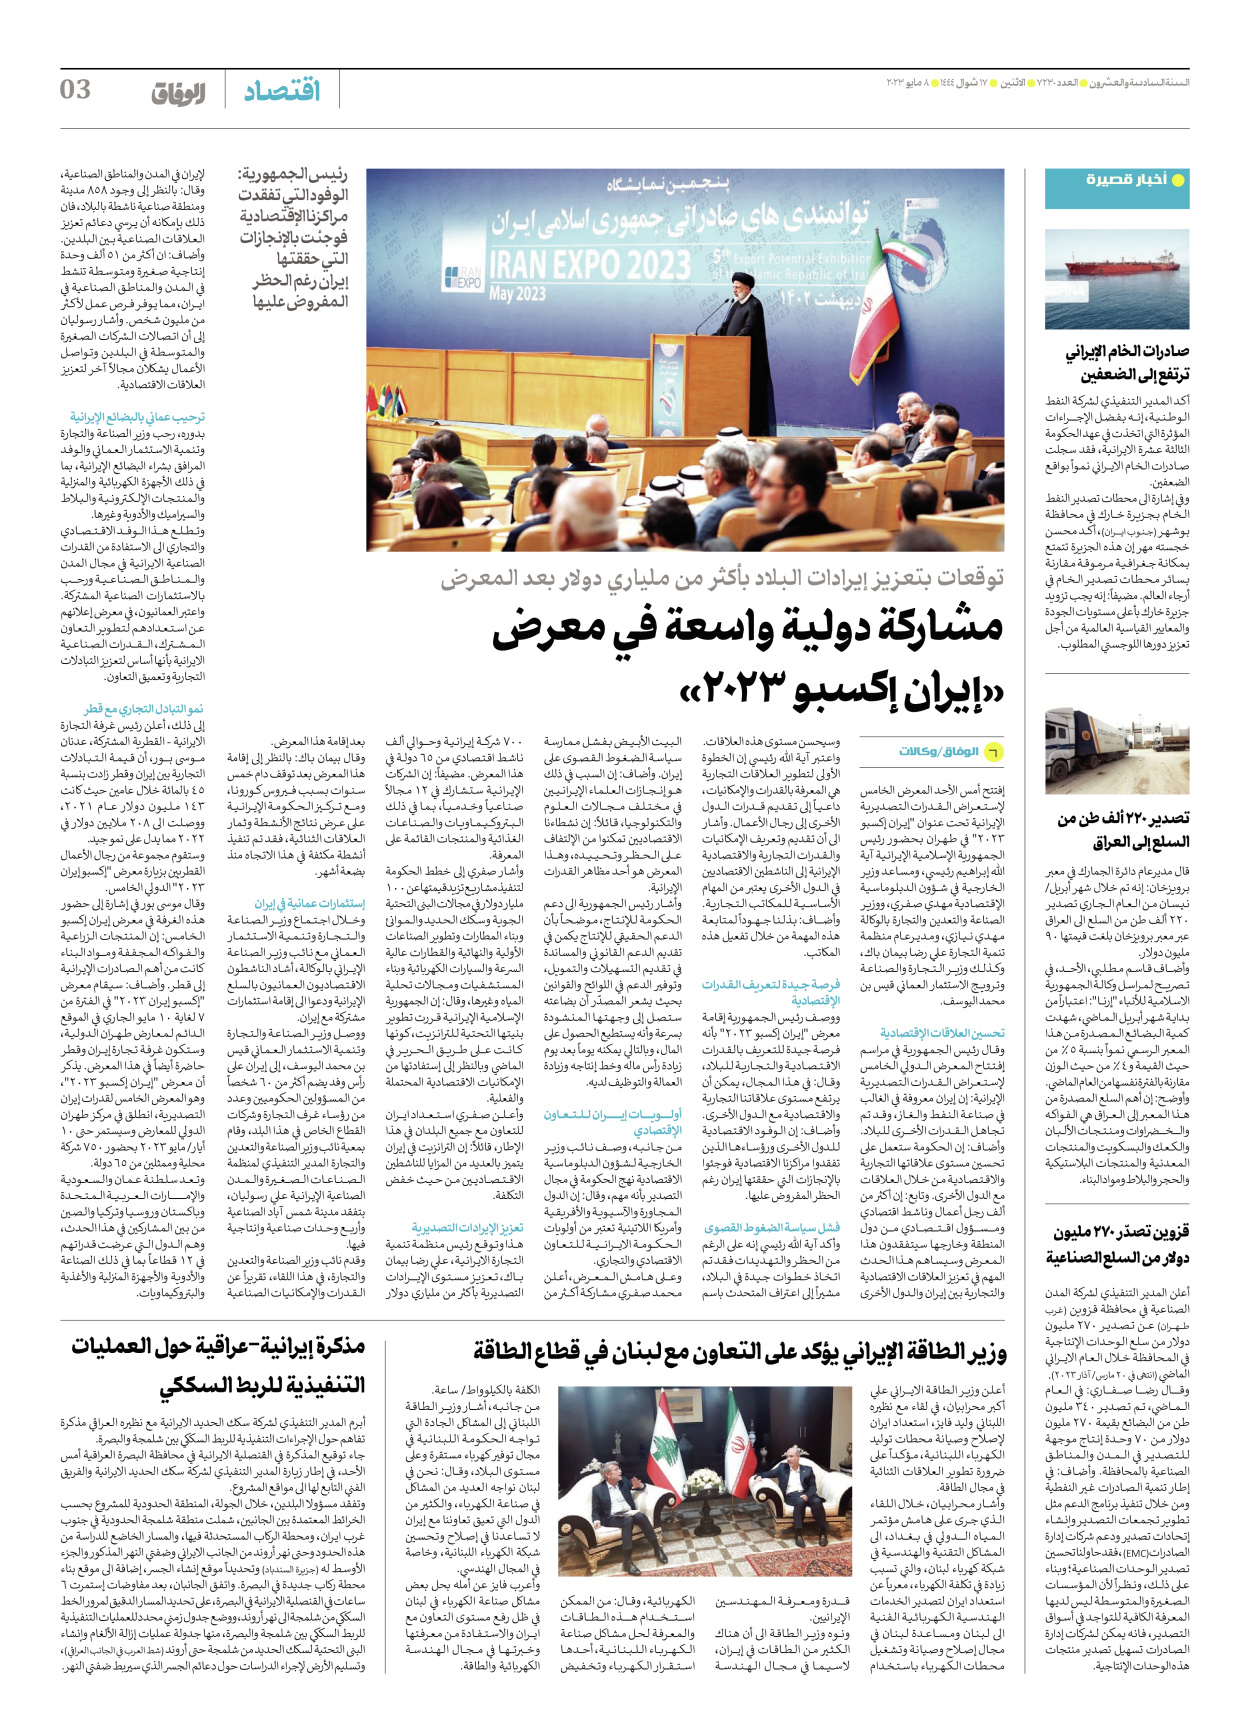 صحیفة ایران الدولیة الوفاق - العدد سبعة آلاف ومائتان وثلاثون - ٠٨ مايو ٢٠٢٣ - الصفحة ۳